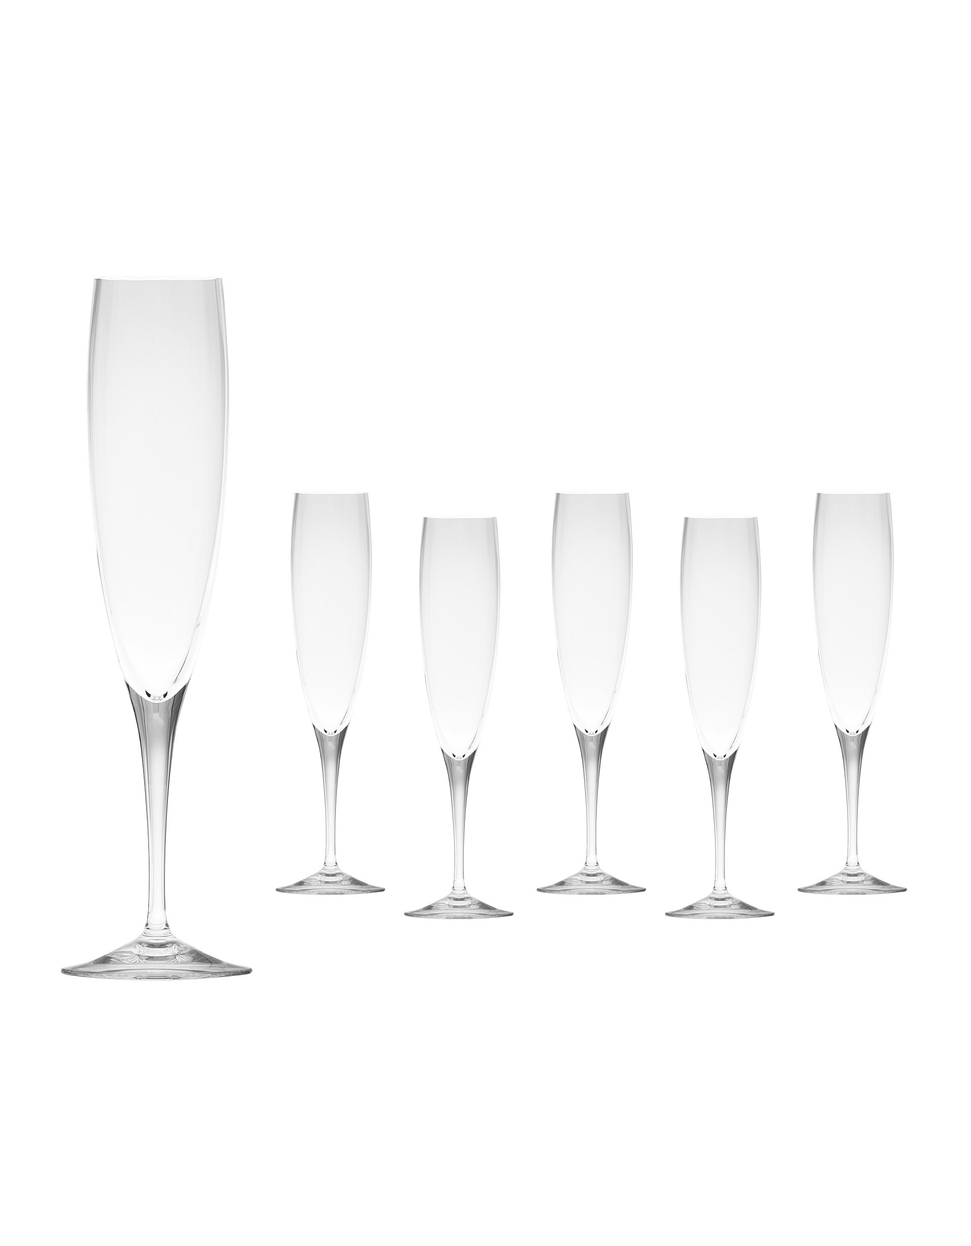 Optic chamapagne glass, 200 ml – set of 6 glasses